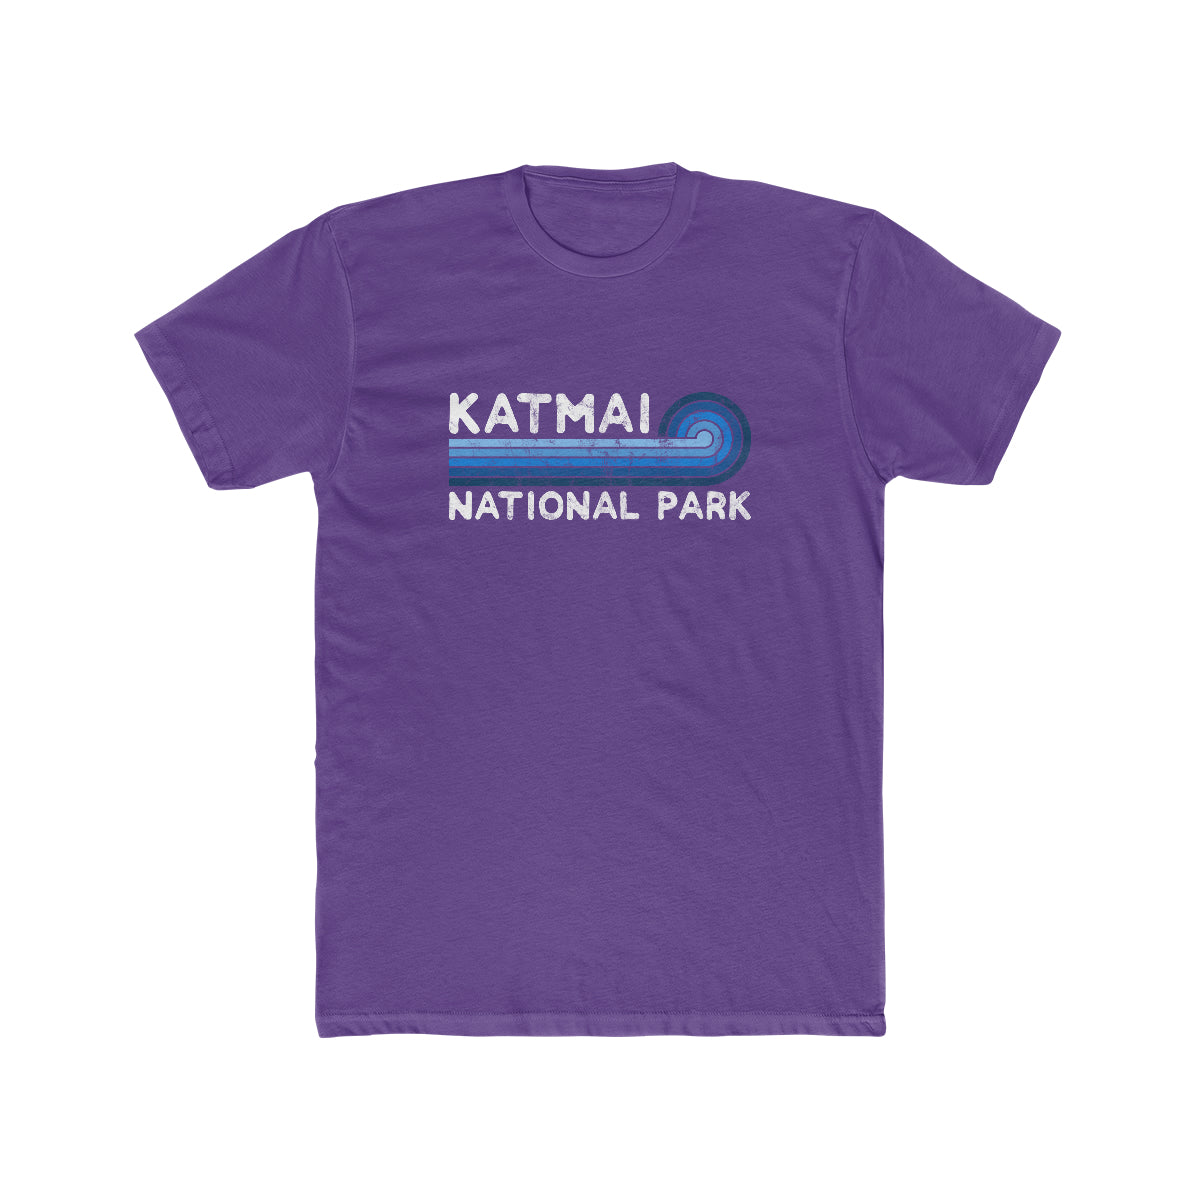 Katmai National Park T-Shirt - Blue Vintage Stretched Sunrise